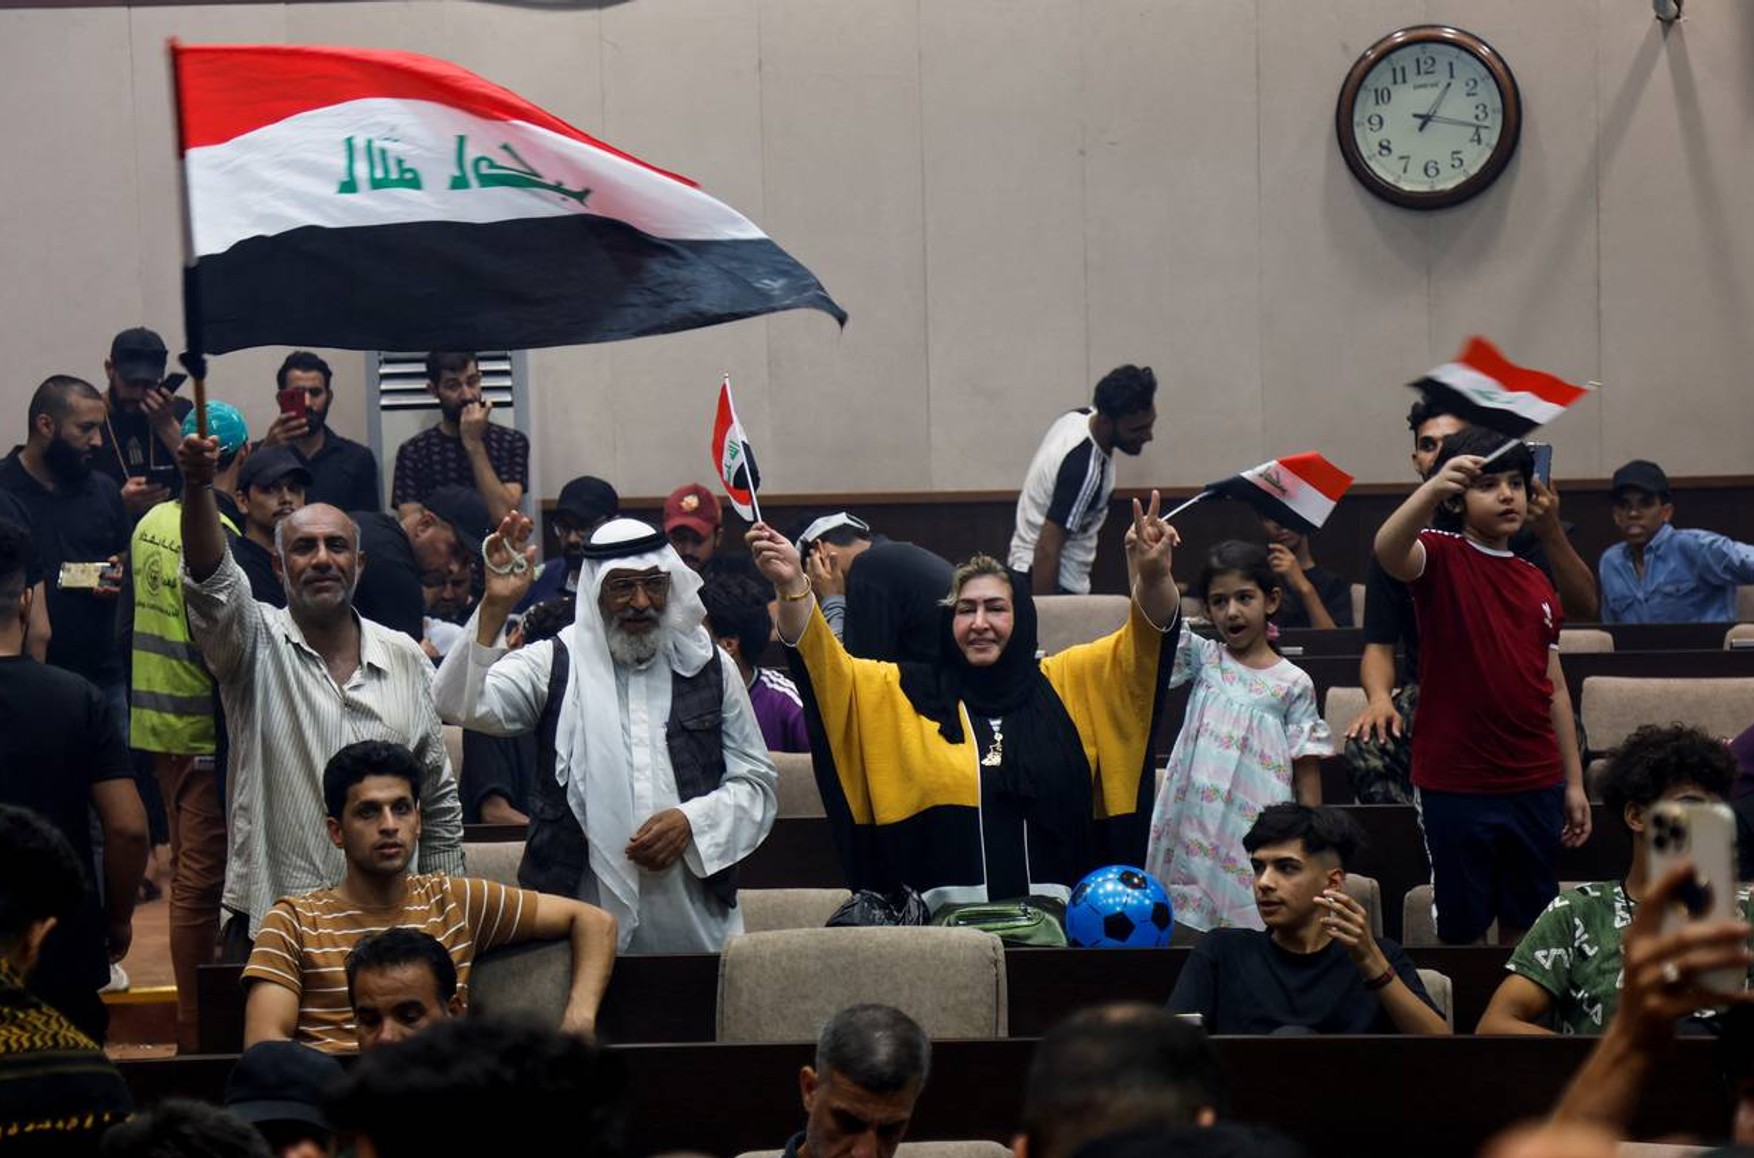 В столицу Ирака ввели войска. Протестующие заняли здание парламента